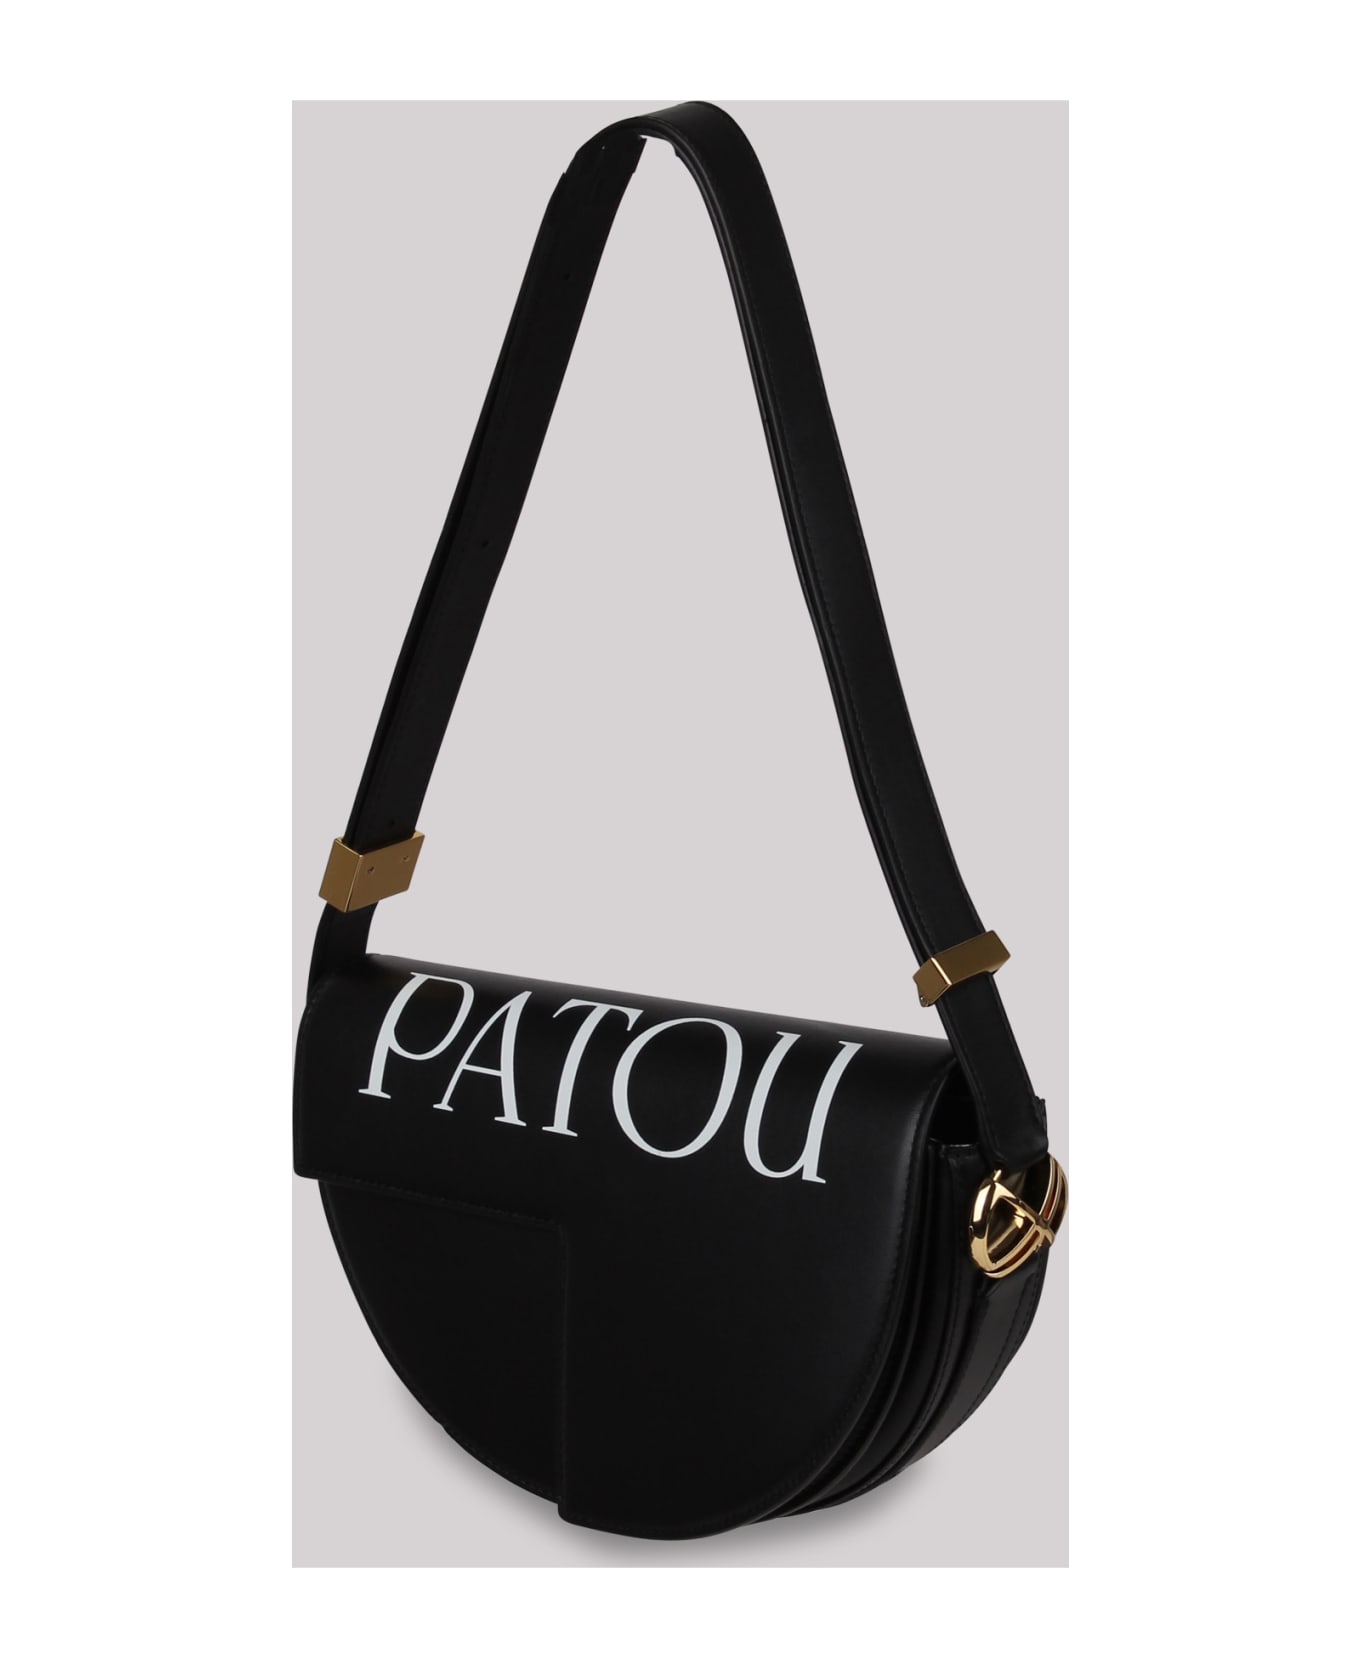 Patou Logo-print Leather Bag